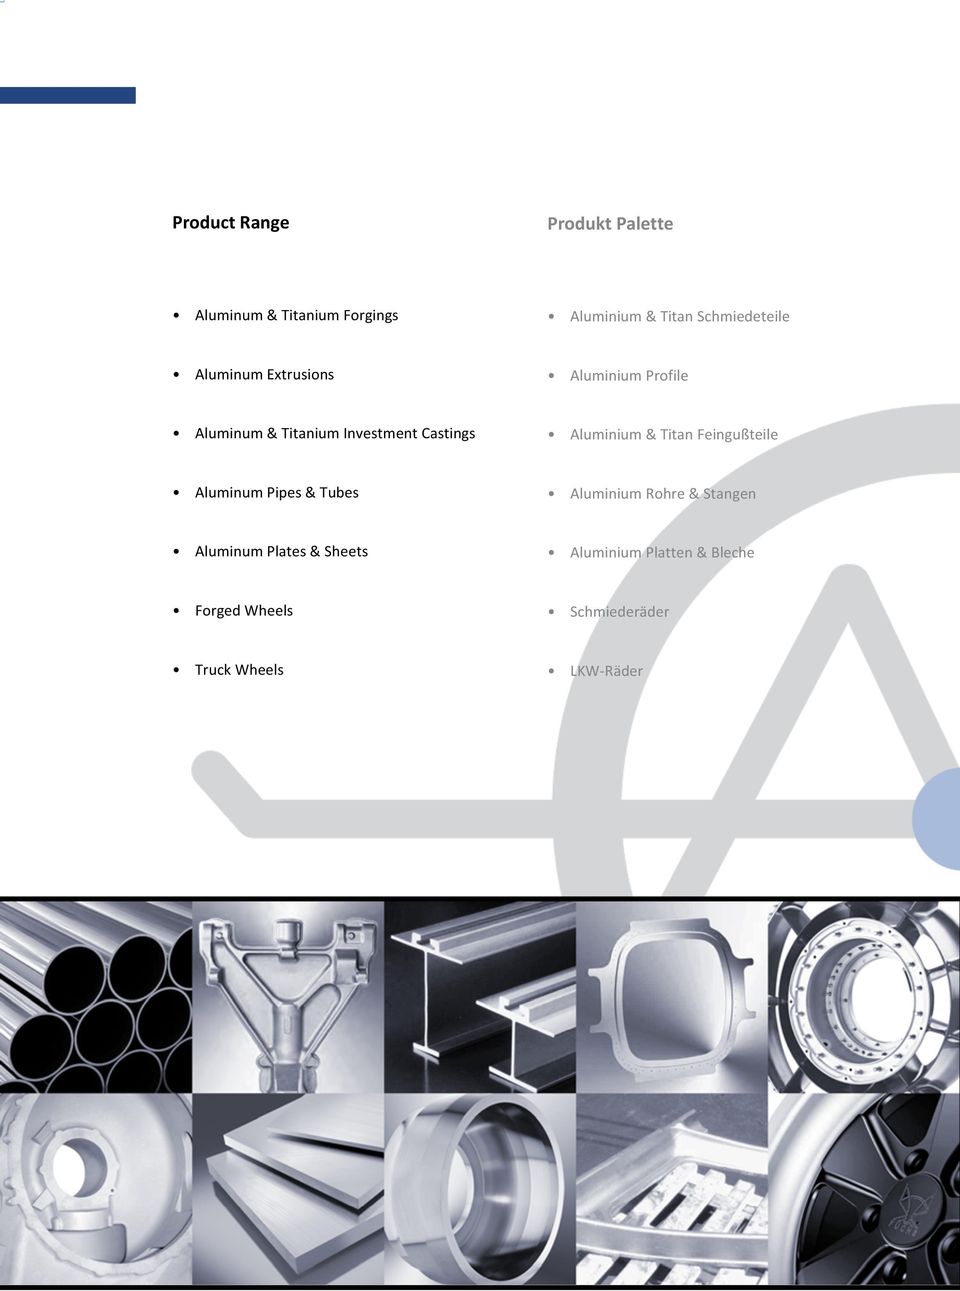 Castings Aluminium & Titan Feingußteile Aluminum Pipes & Tubes Aluminium Rohre &